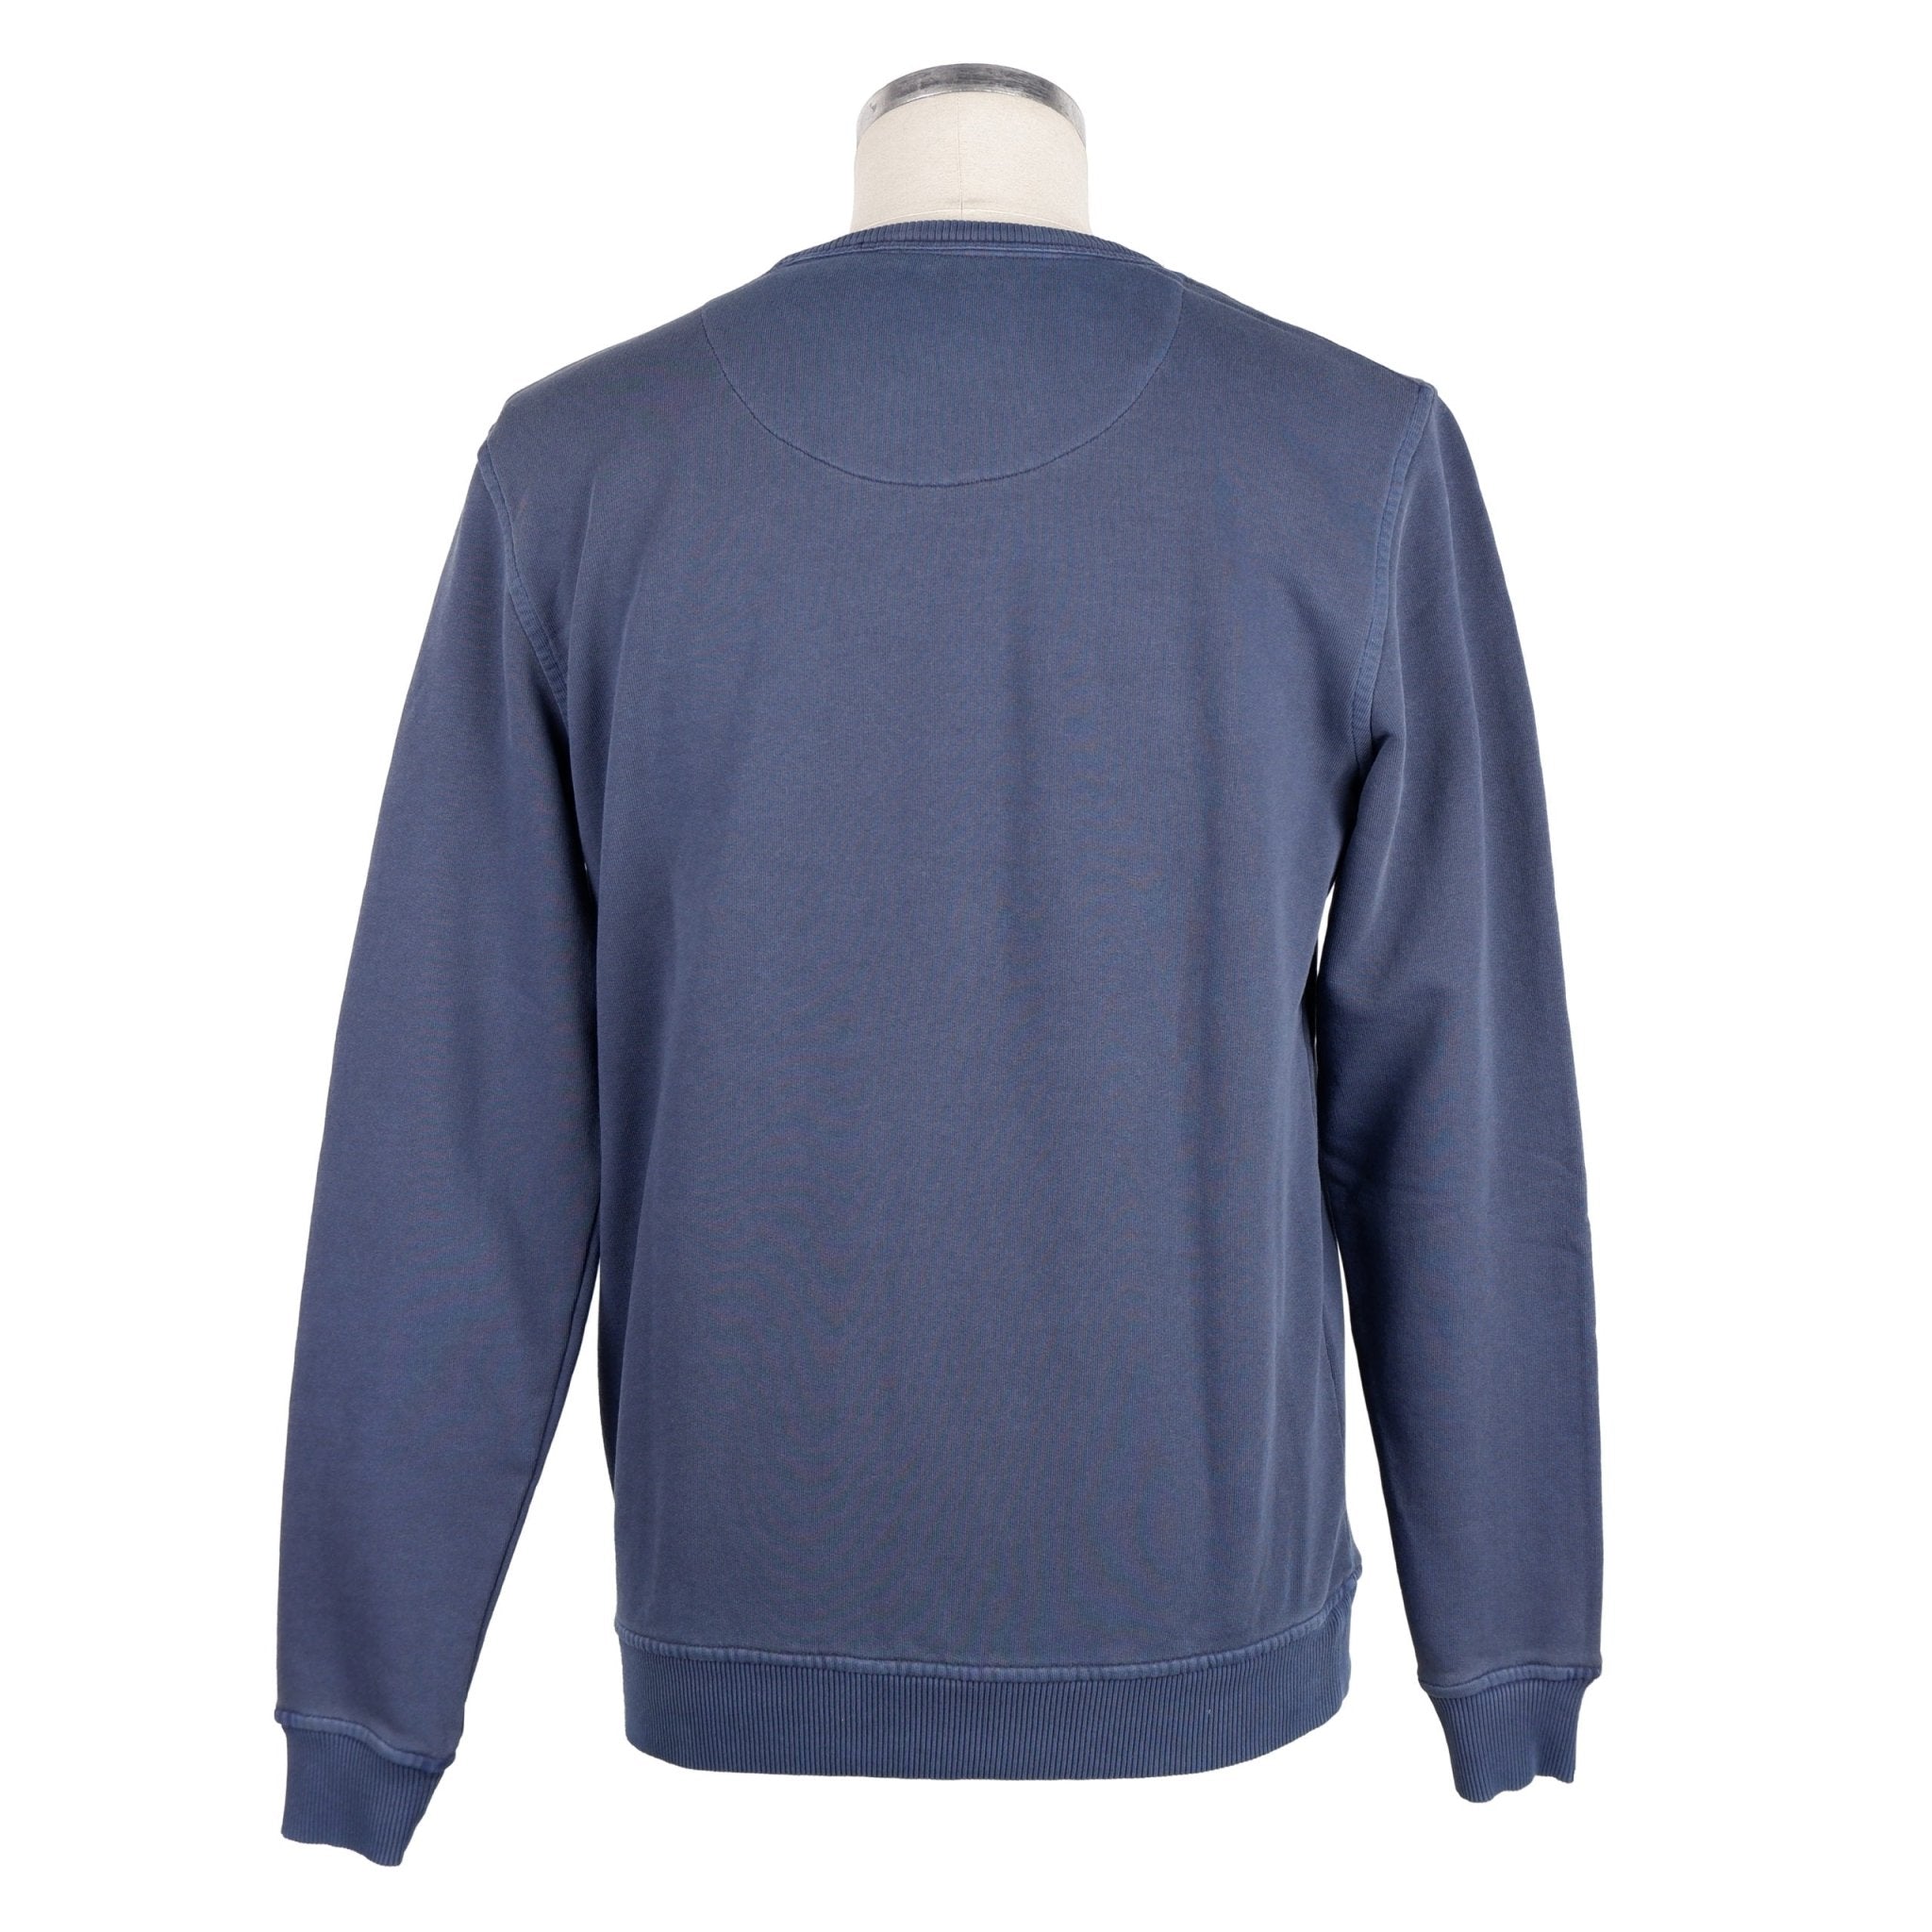 Refrigiwear Blue Cotton Sweater - Fizigo